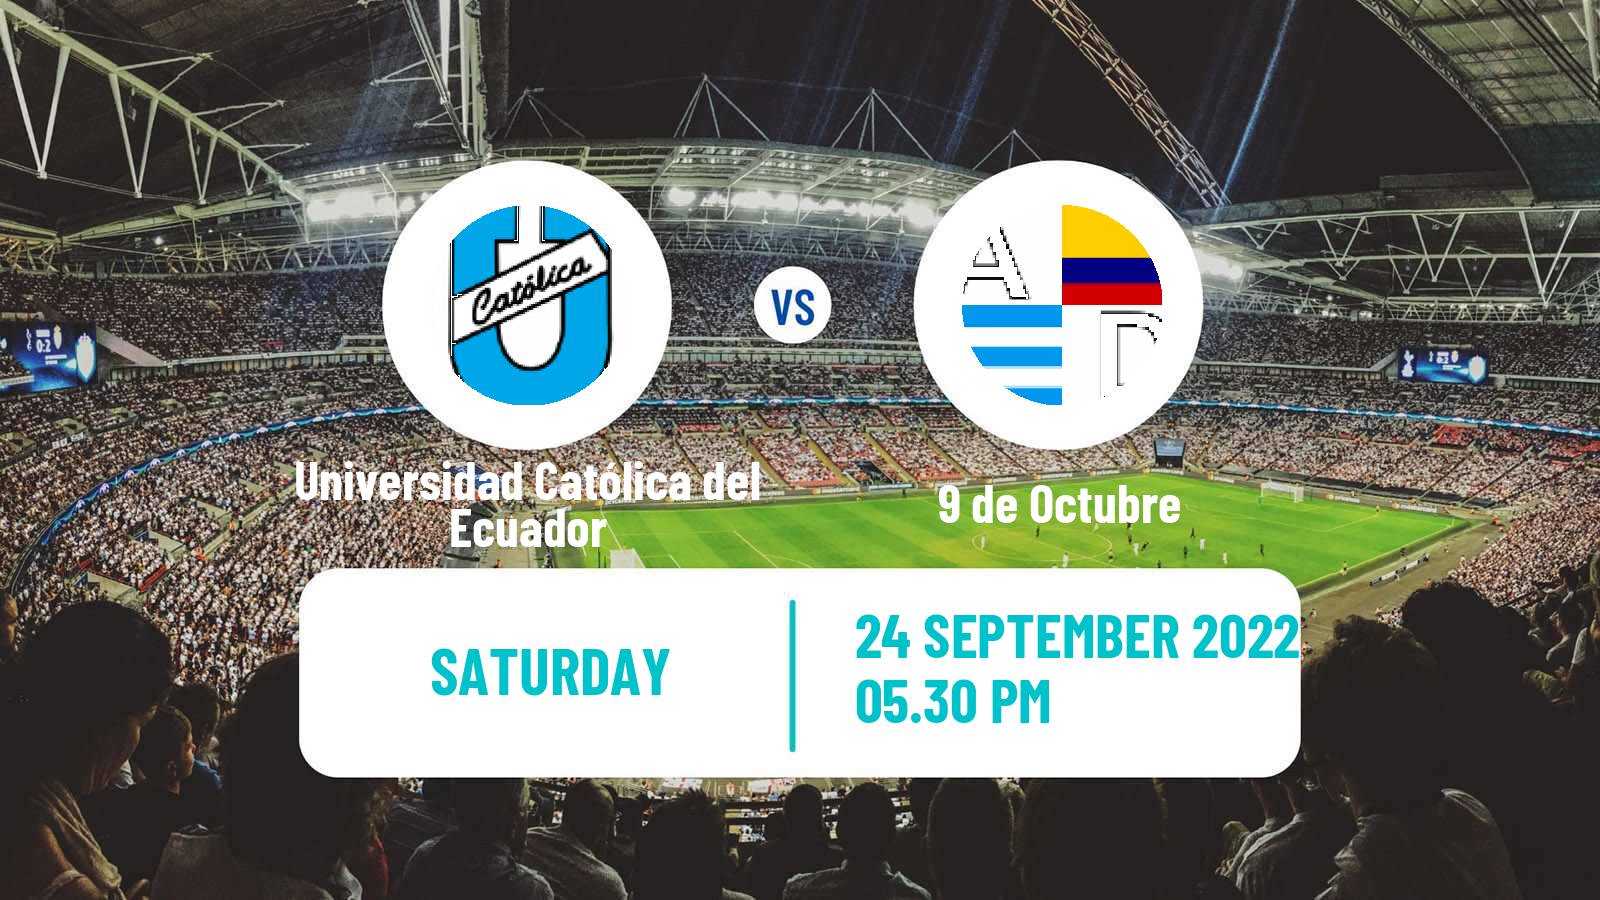 Soccer Ecuadorian Liga Pro Universidad Católica del Ecuador - 9 de Octubre